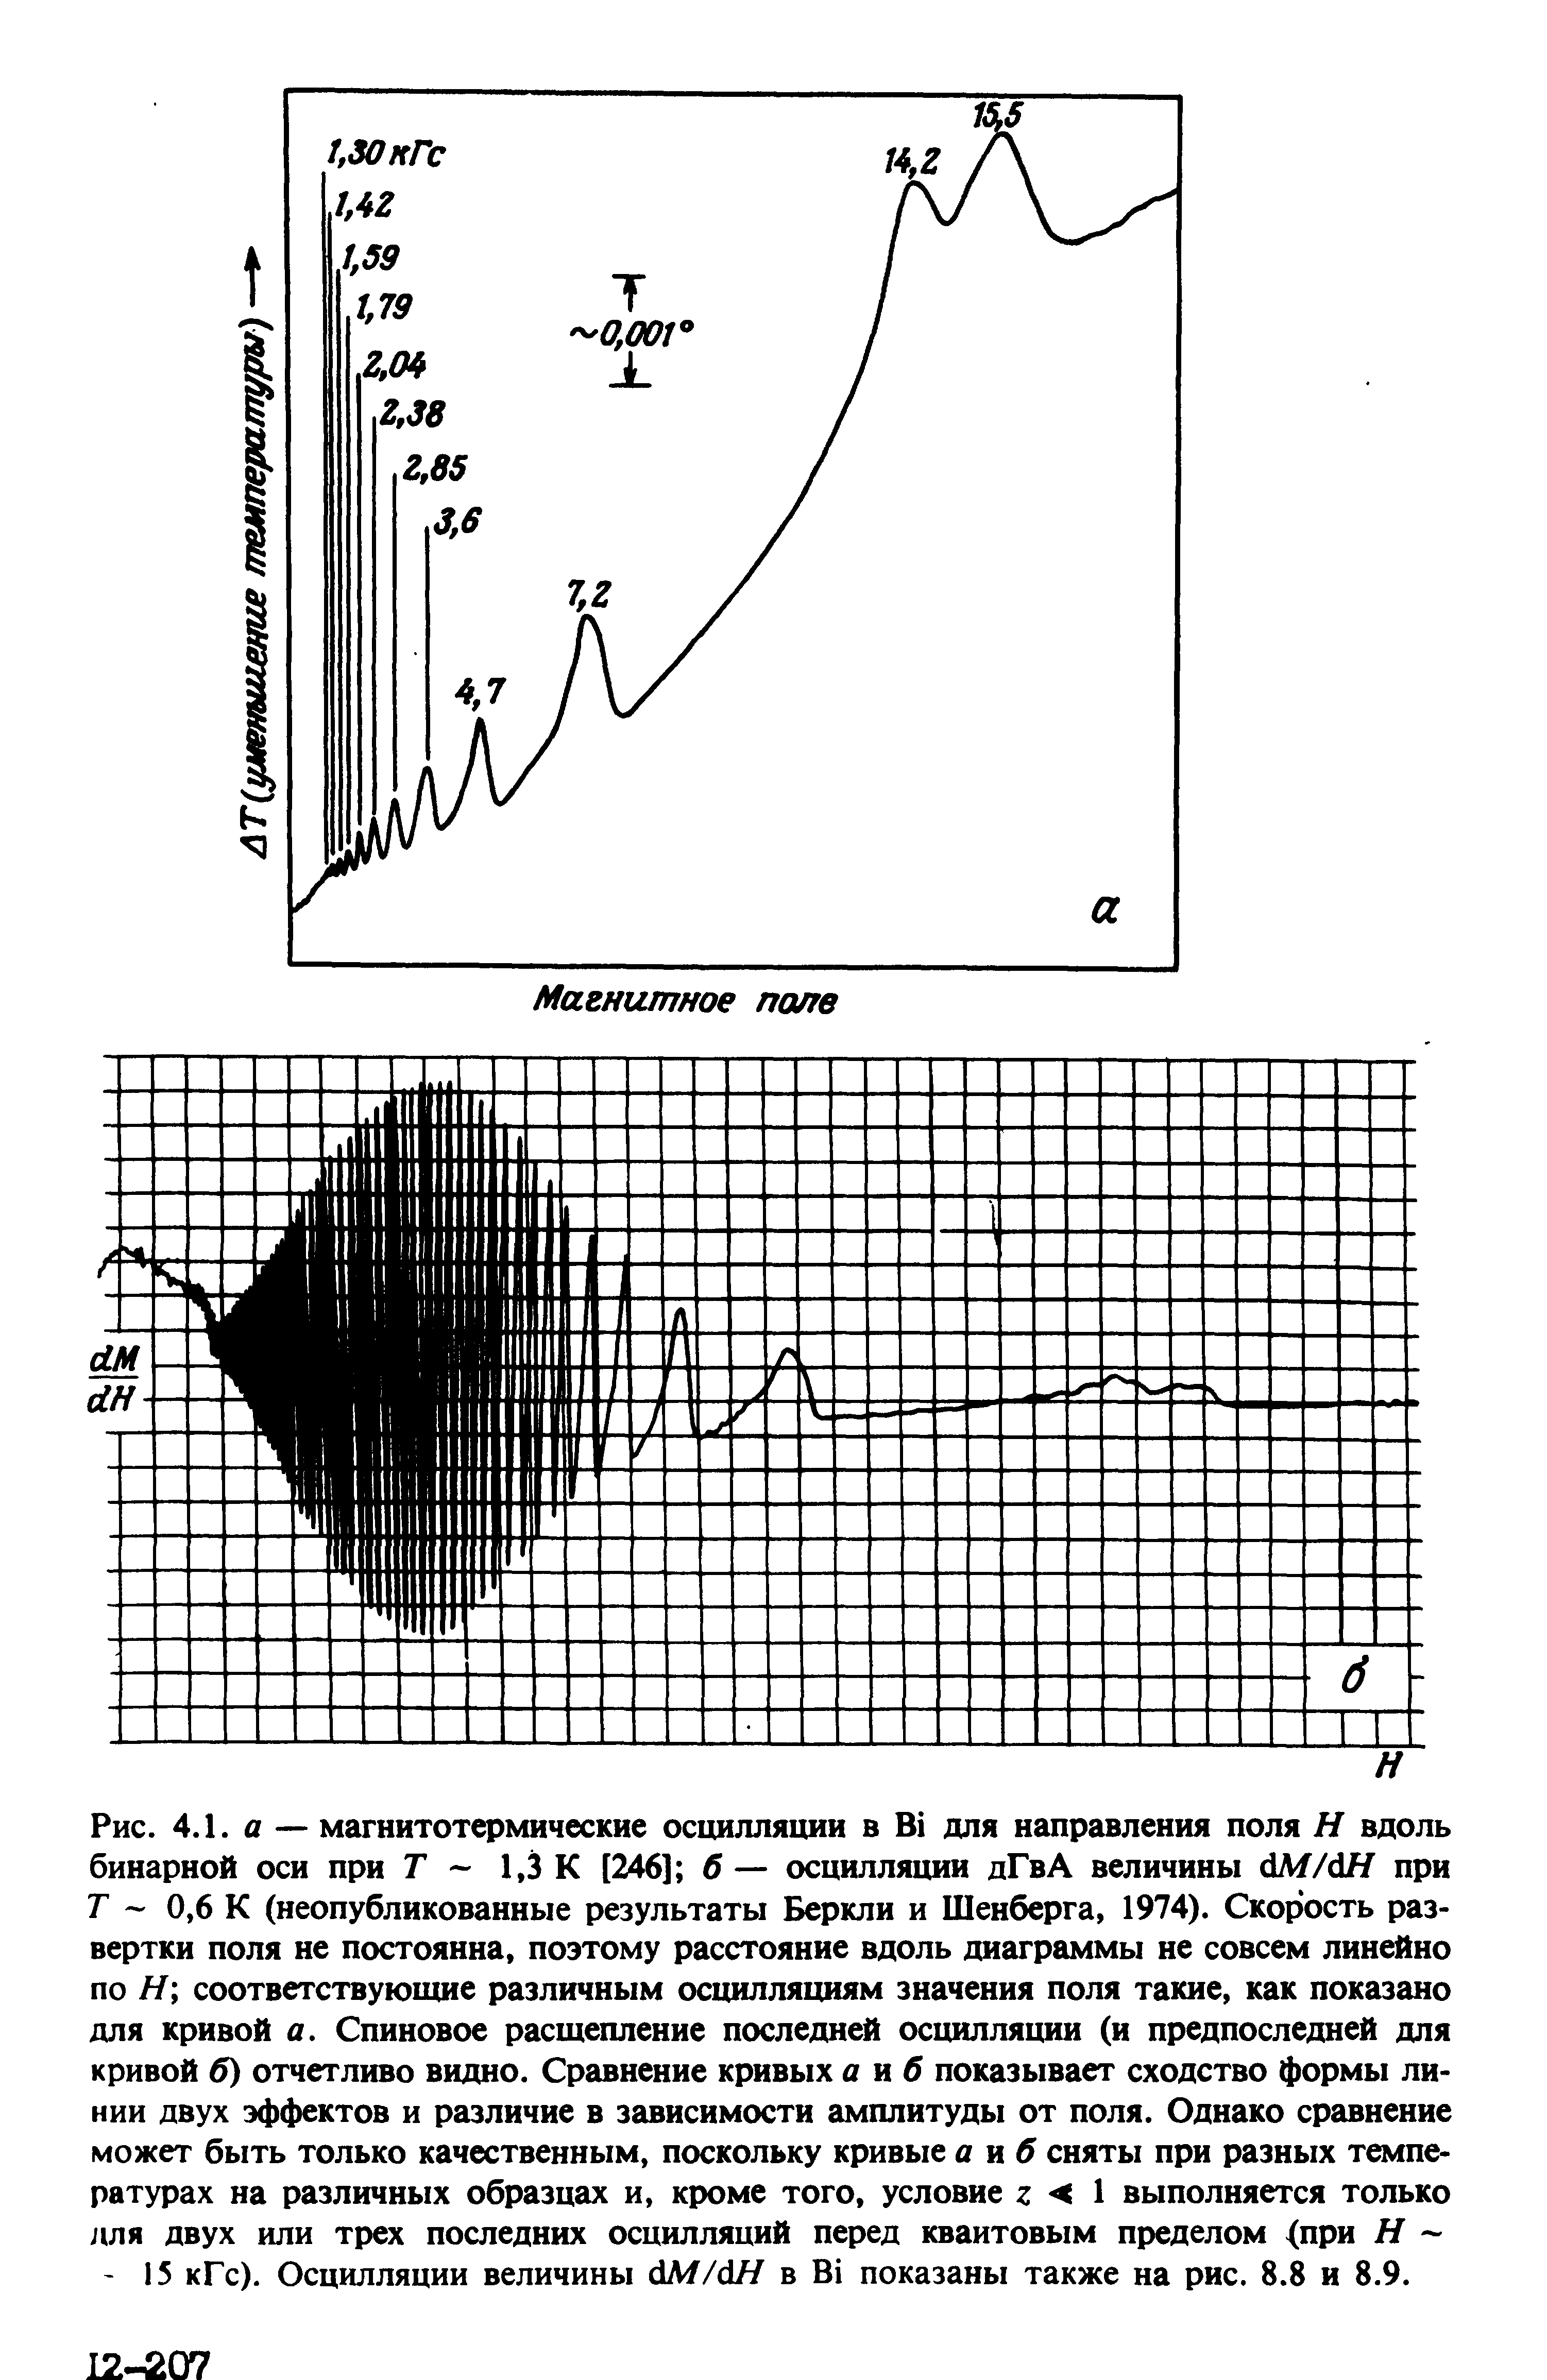 Рис. 4.1. А — магнитотермические осцилляции в В для <a href="/info/19231">направления поля</a> Н вдоль бинарной оси при Г 1,3 К [246] б — осцилляции дГвА величины М/дН при Г - 0,6 К (неопубликованные результаты Беркли и Шенберга, 1974). <a href="/info/462993">Скорость развертки</a> поля не постоянна, поэтому расстояние вдоль диаграммы не совсем линейно по Я соответствующие различным осцилляциям значения поля такие, как показано для кривой а. Спиновое расщепление последней осцилляции (и предпоследней для кривой б) отчетливо видно. <a href="/info/8110">Сравнение кривых</a> а иб показывает сходство формы ли< НИИ двух эффектов и различие в зависимости амплитуды от поля. Однако сравнение может быть только качественным, поскольку кривые а яб сняты при разных температурах на различных образцах и, кроме того, условие г < I выполняется только для двух или трех последних осцилляций перед <a href="/info/401831">квантовым пределом</a> <при Я 15 кГс). Осцилляции величины с1М/с1Я в В показаны также на рис. 8.8 и 8.9.
